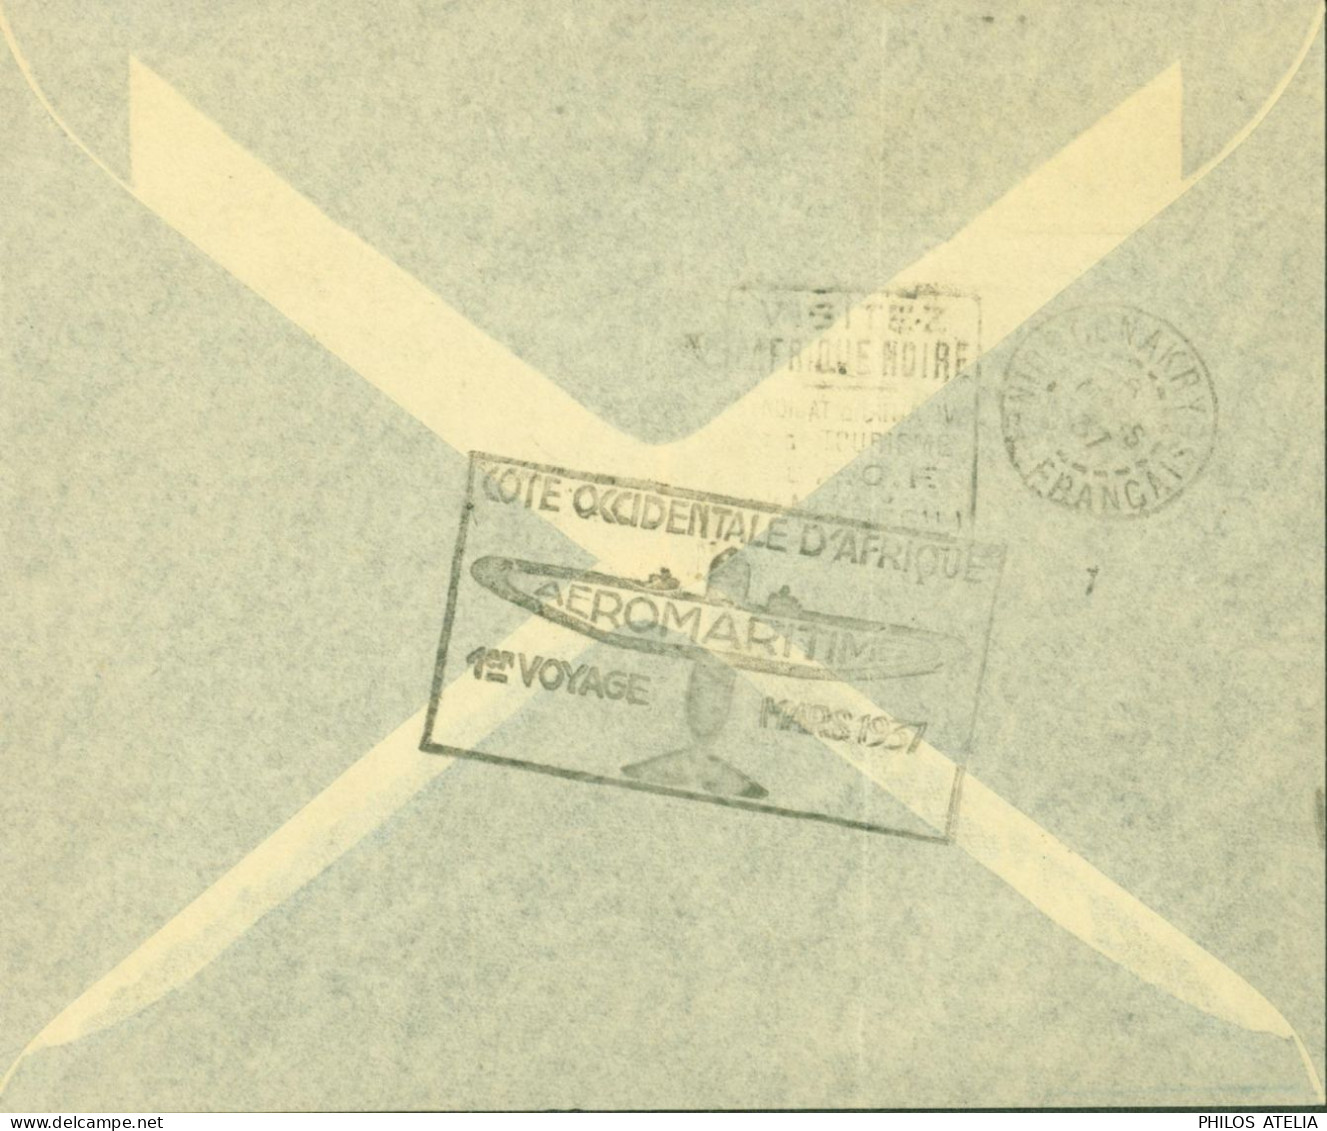 Dahomey YT N°99 101 72 Par Avion Cachet Cote Occidentale D'Afrique Aéromaritime 1er Voyage Mars 1937 CAD Cotonou 4 3 37 - Lettres & Documents